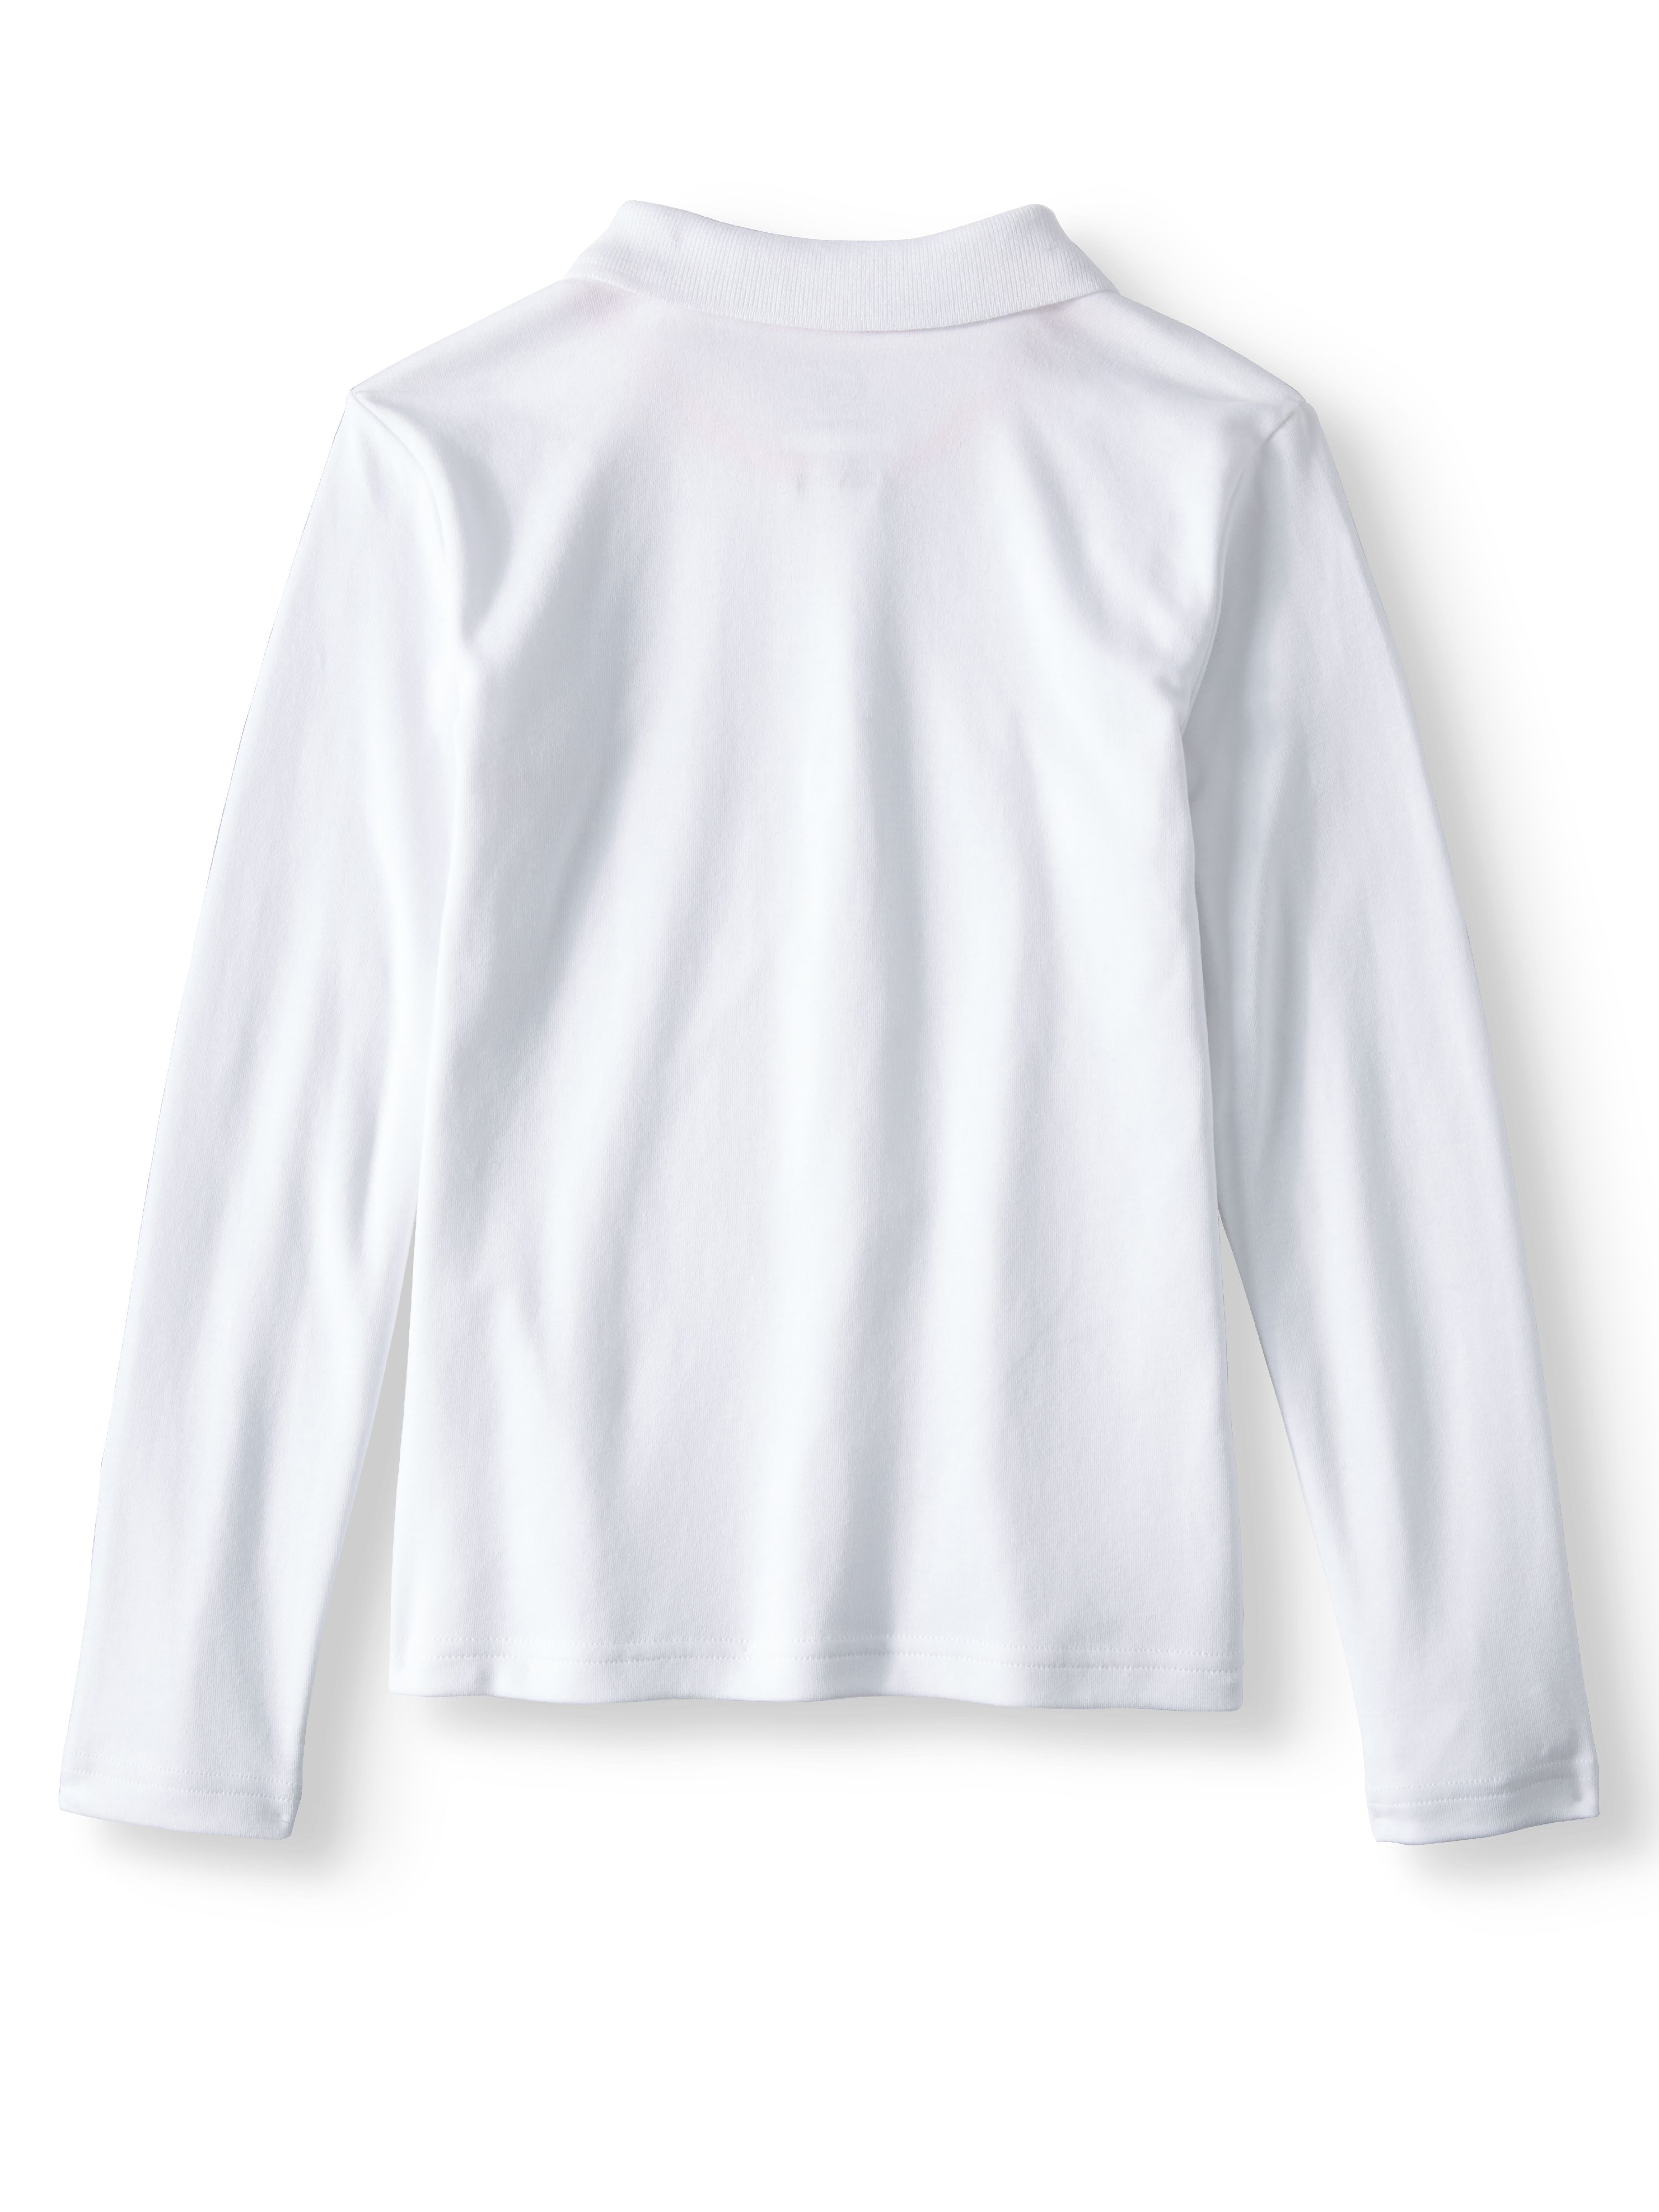 Wonder Nation Girls School Uniform Long Sleeve Interlock Polo Shirt, 2-Pack Value Bundle, Sizes 4-18 - image 5 of 8